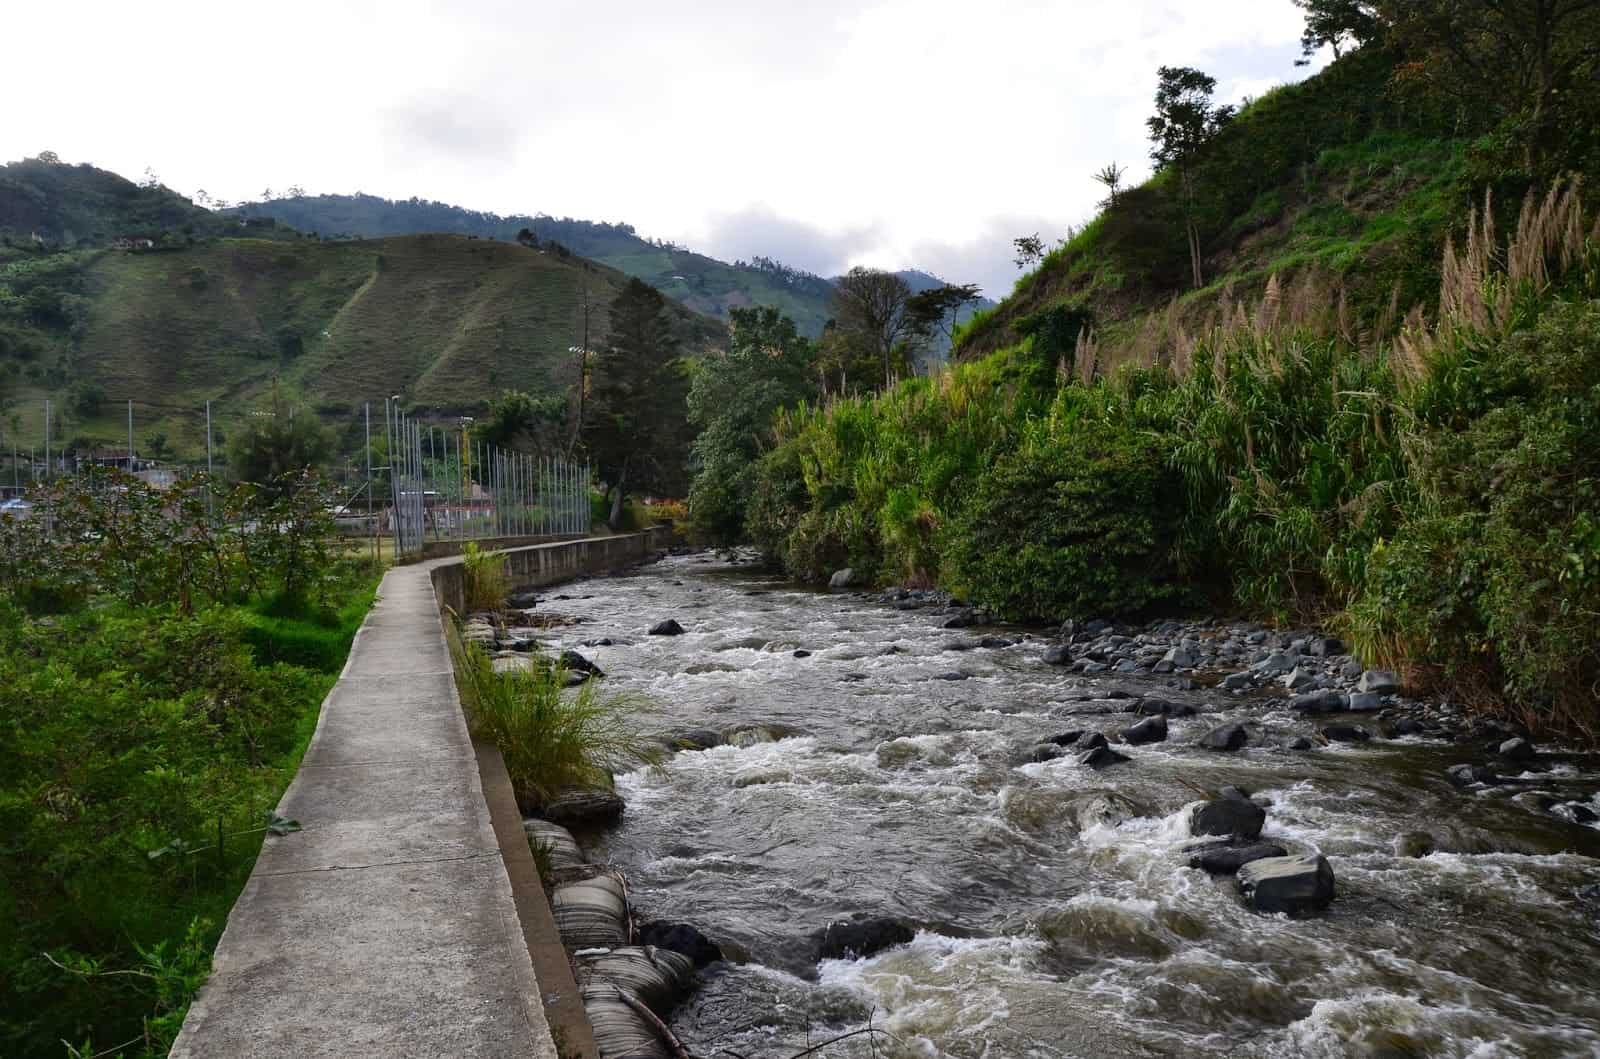 Río Risaralda in Mistrató, Risaralda, Colombia